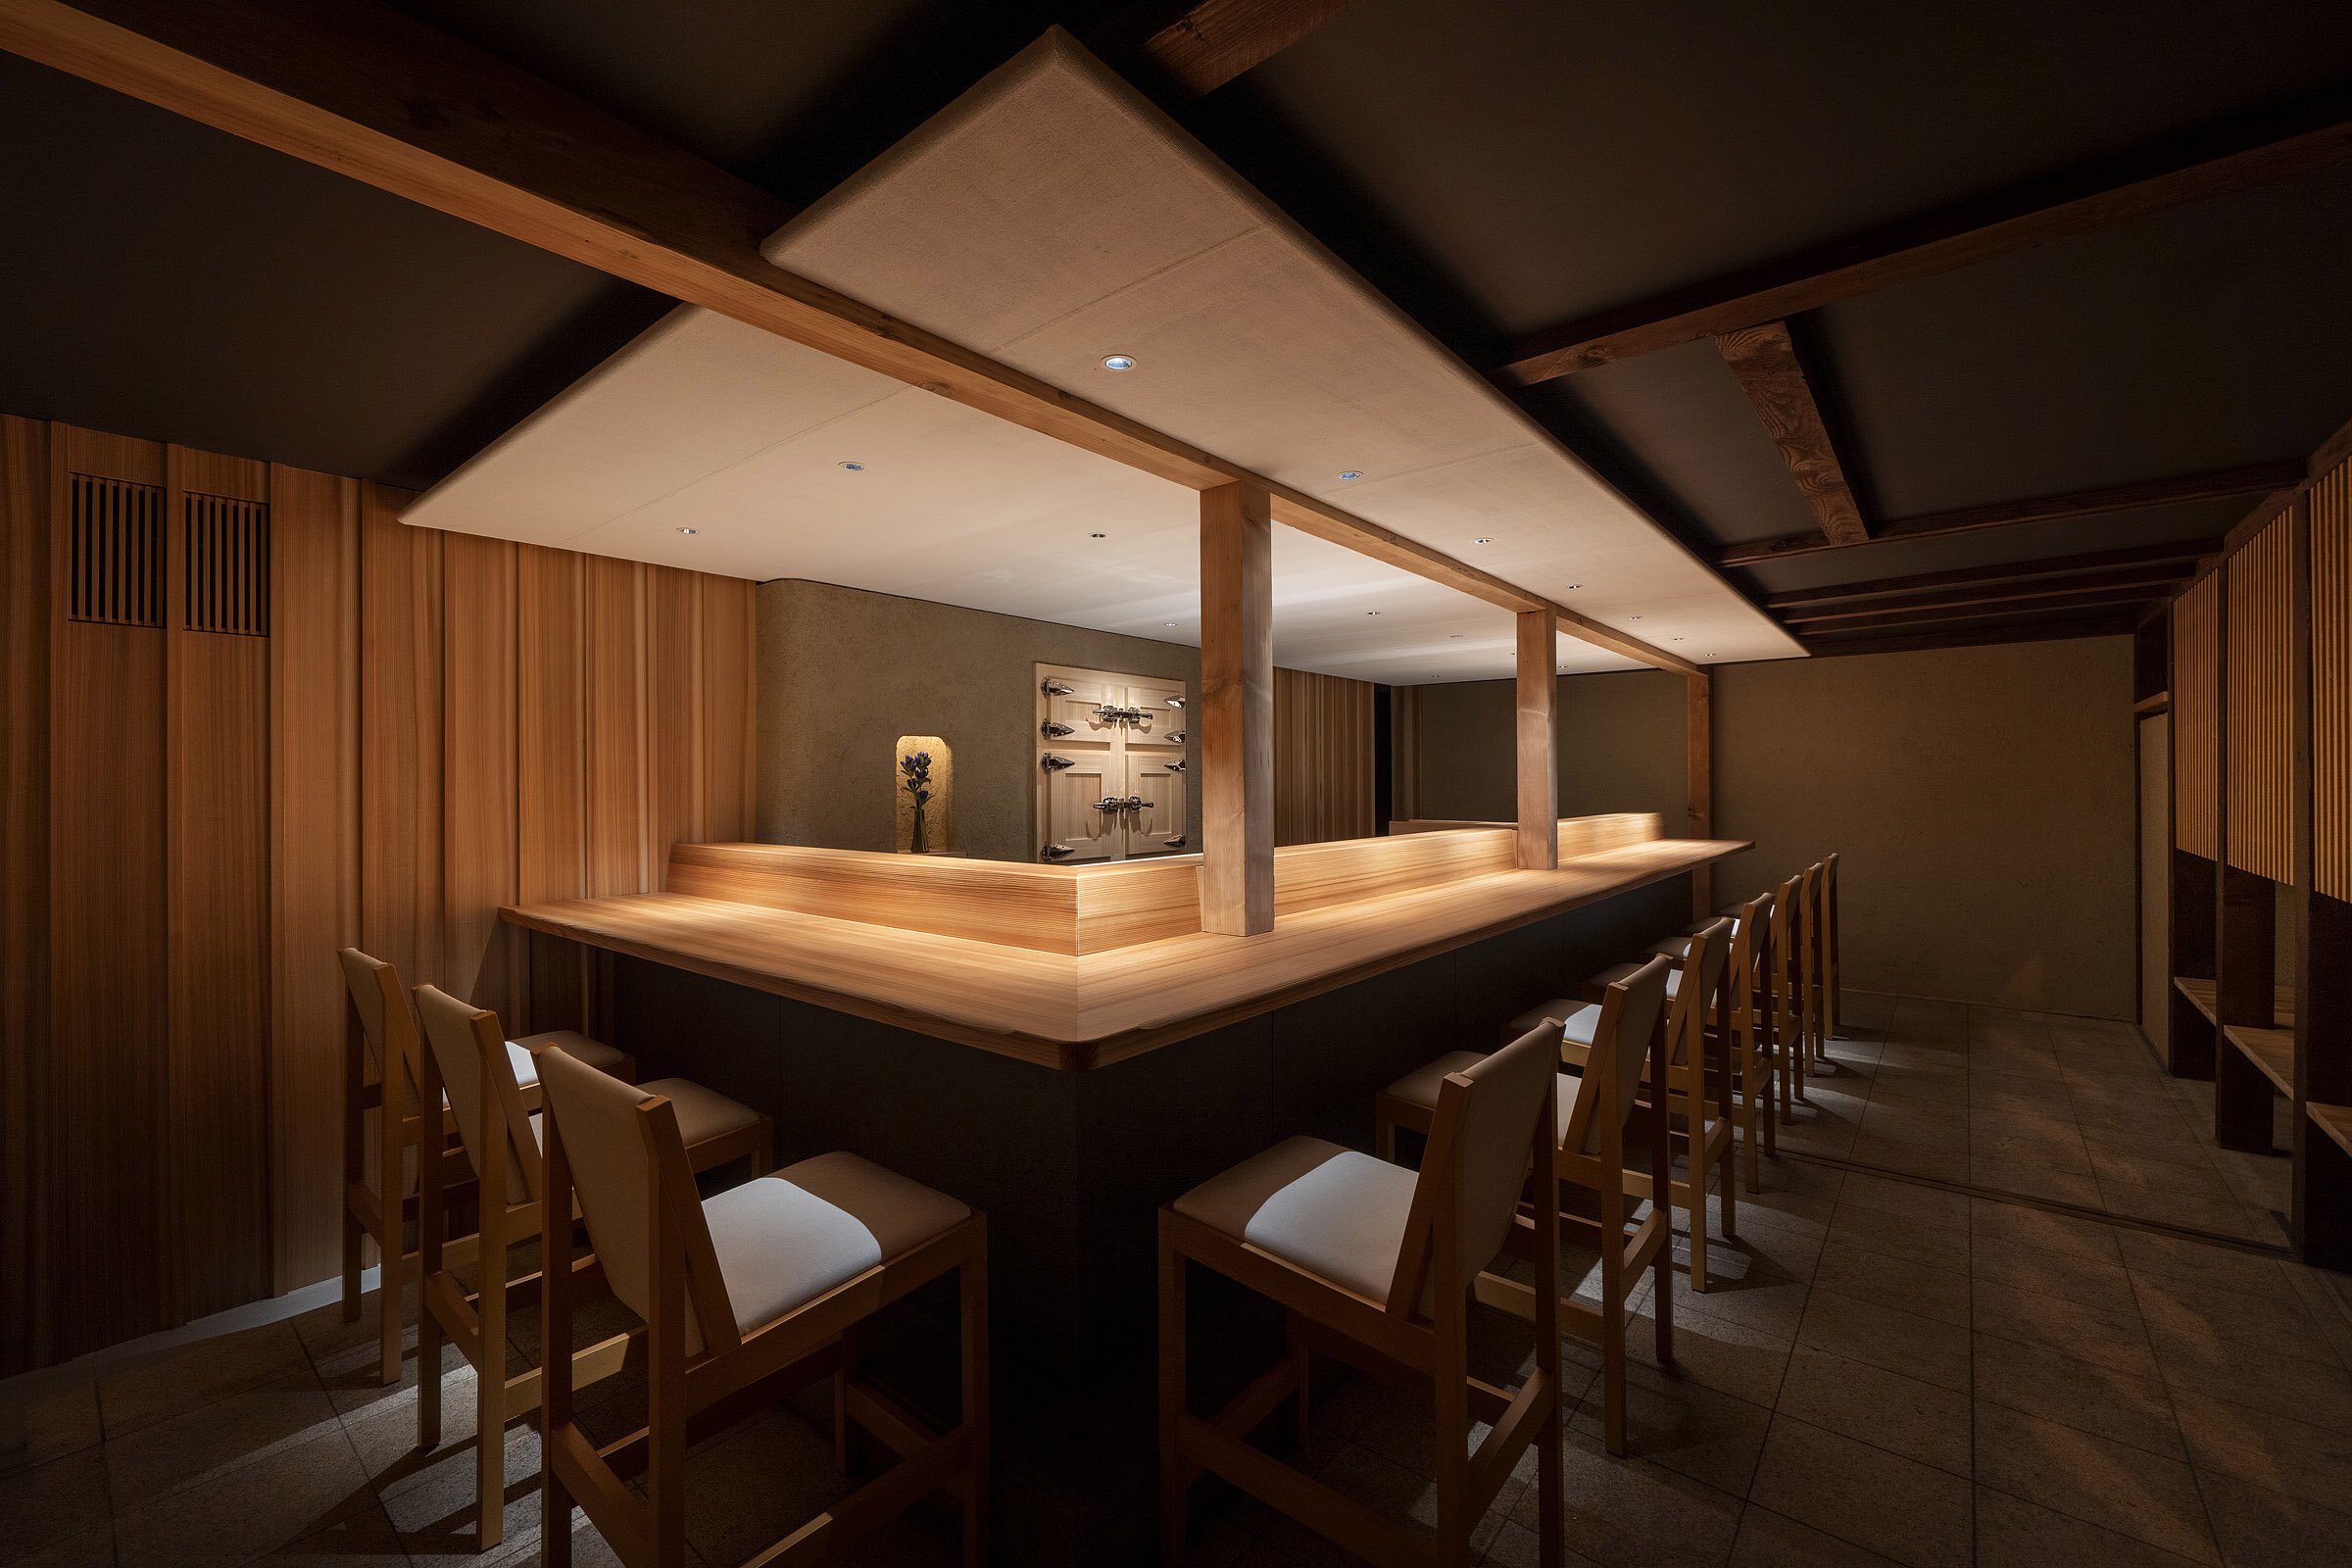  cafe co.の森井良幸がインテリアデザインを手掛けた寿司レストラン「鮨 かうと」のインテリア 